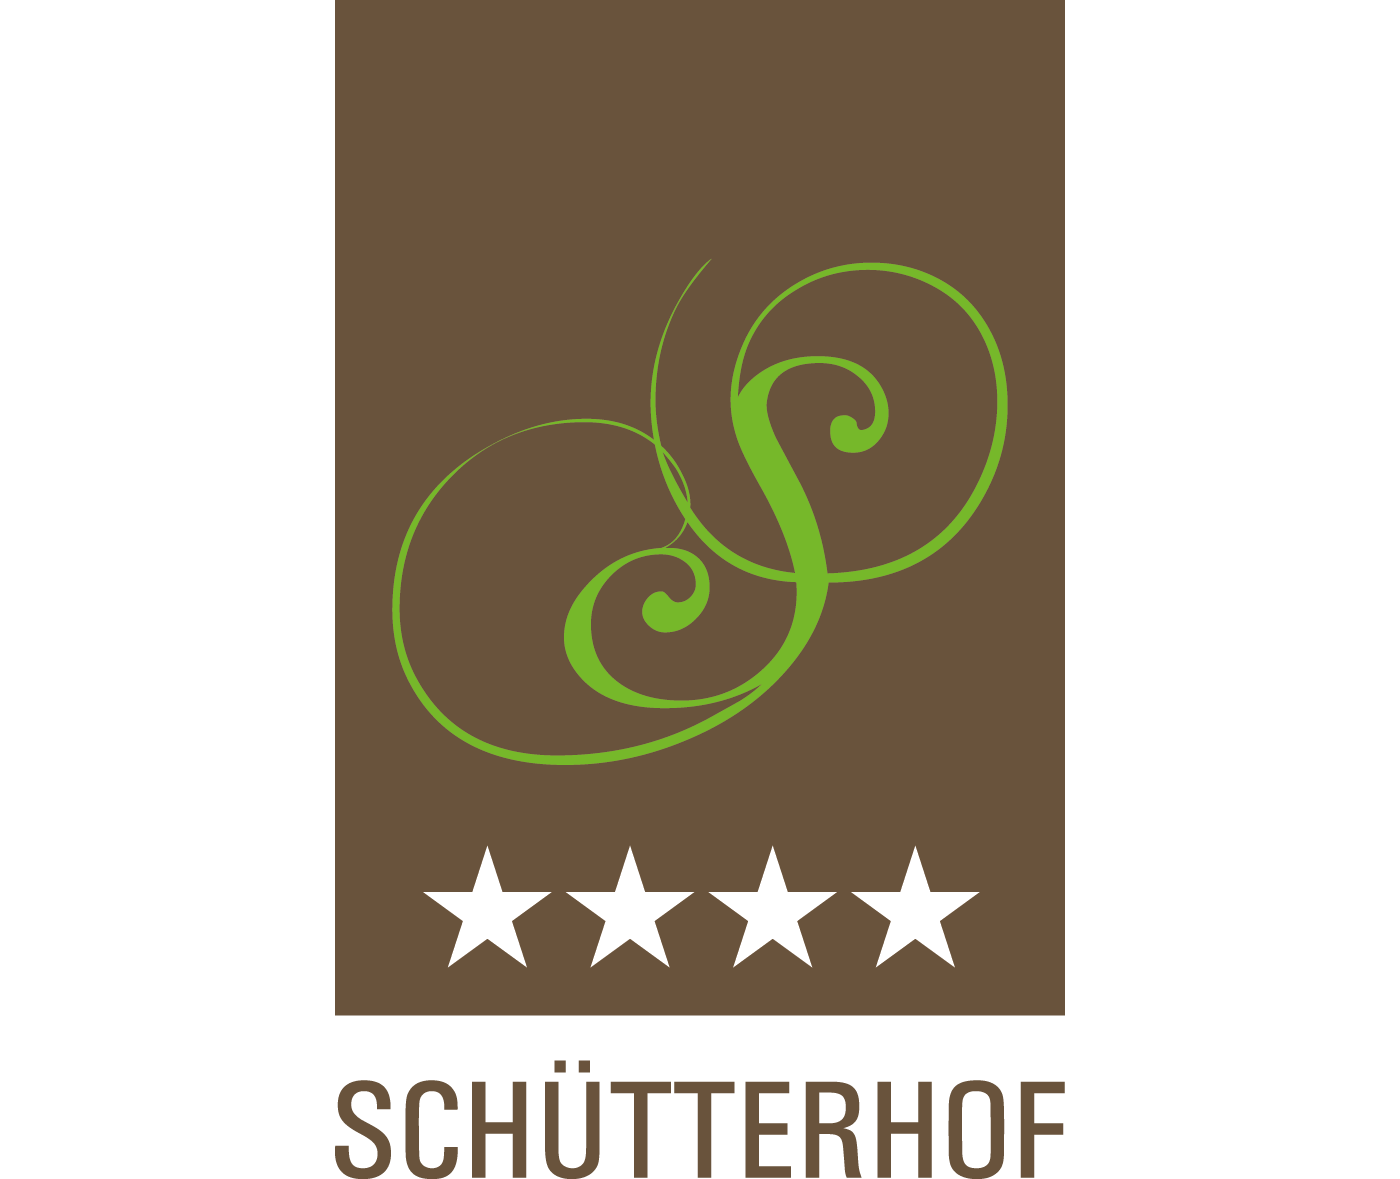 Schütterhof